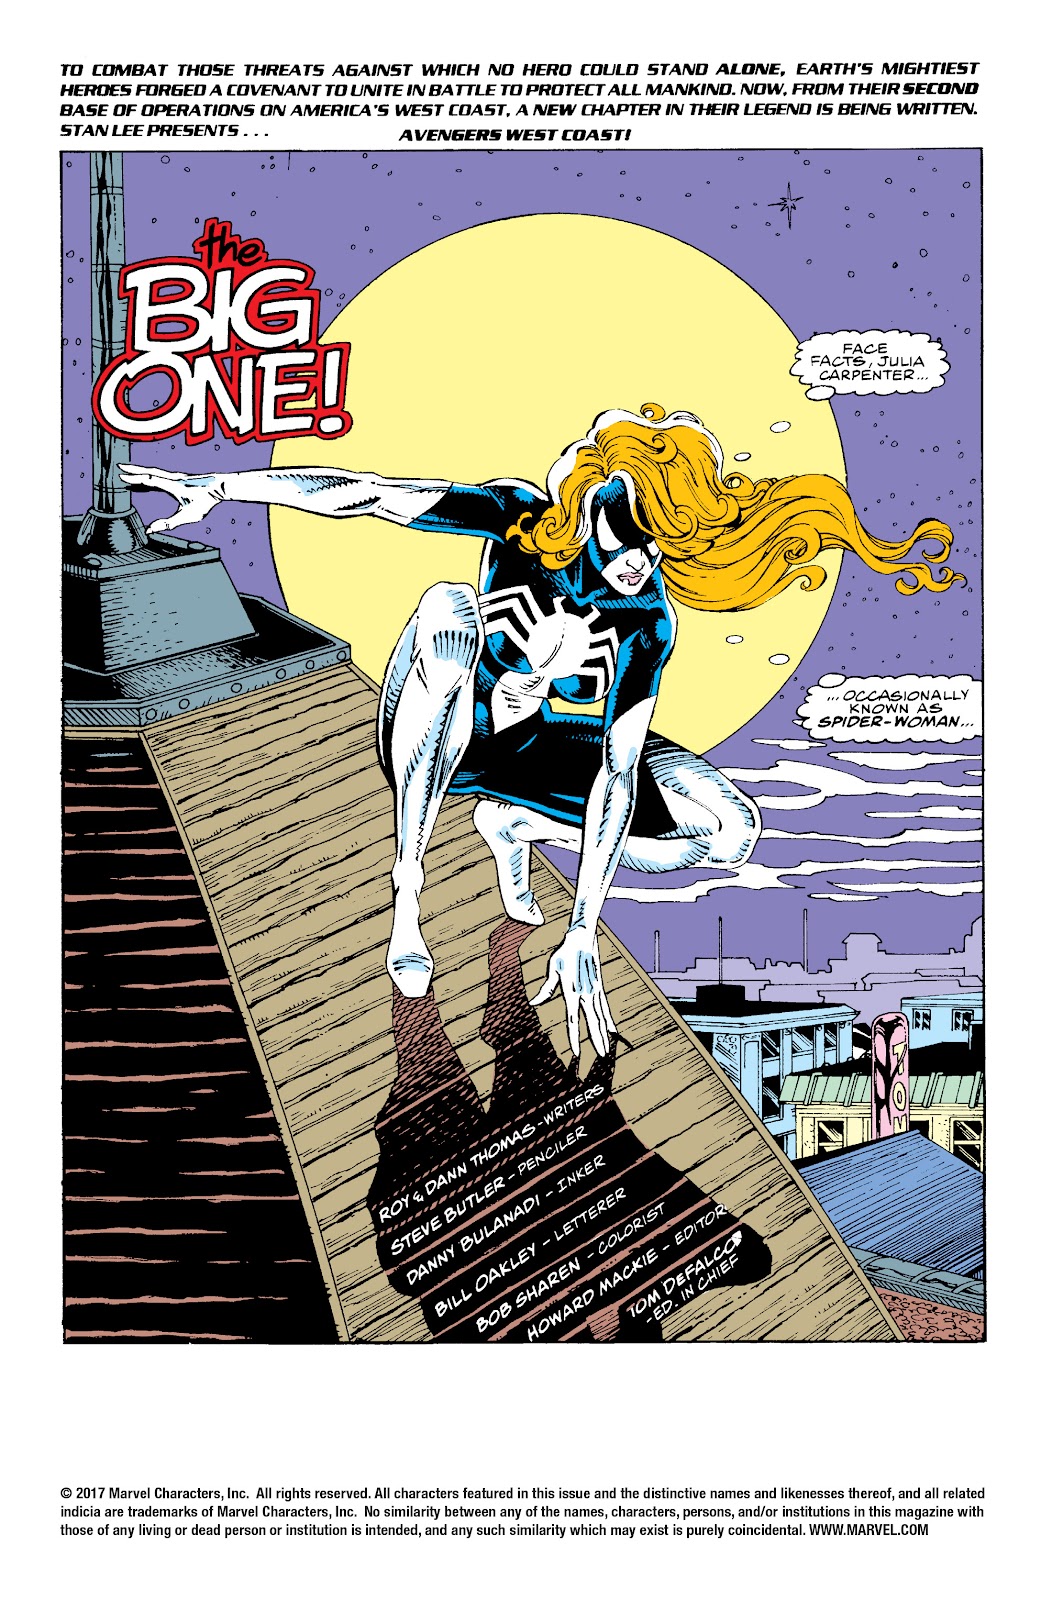 Primera página del Avengers West Coast 70 en la que vemos a Spider-Woman, llamándose por primera vez a si misma Julia Carpenter, agarrada del picudo tejado que nos muestra el perfil de una ciudad.